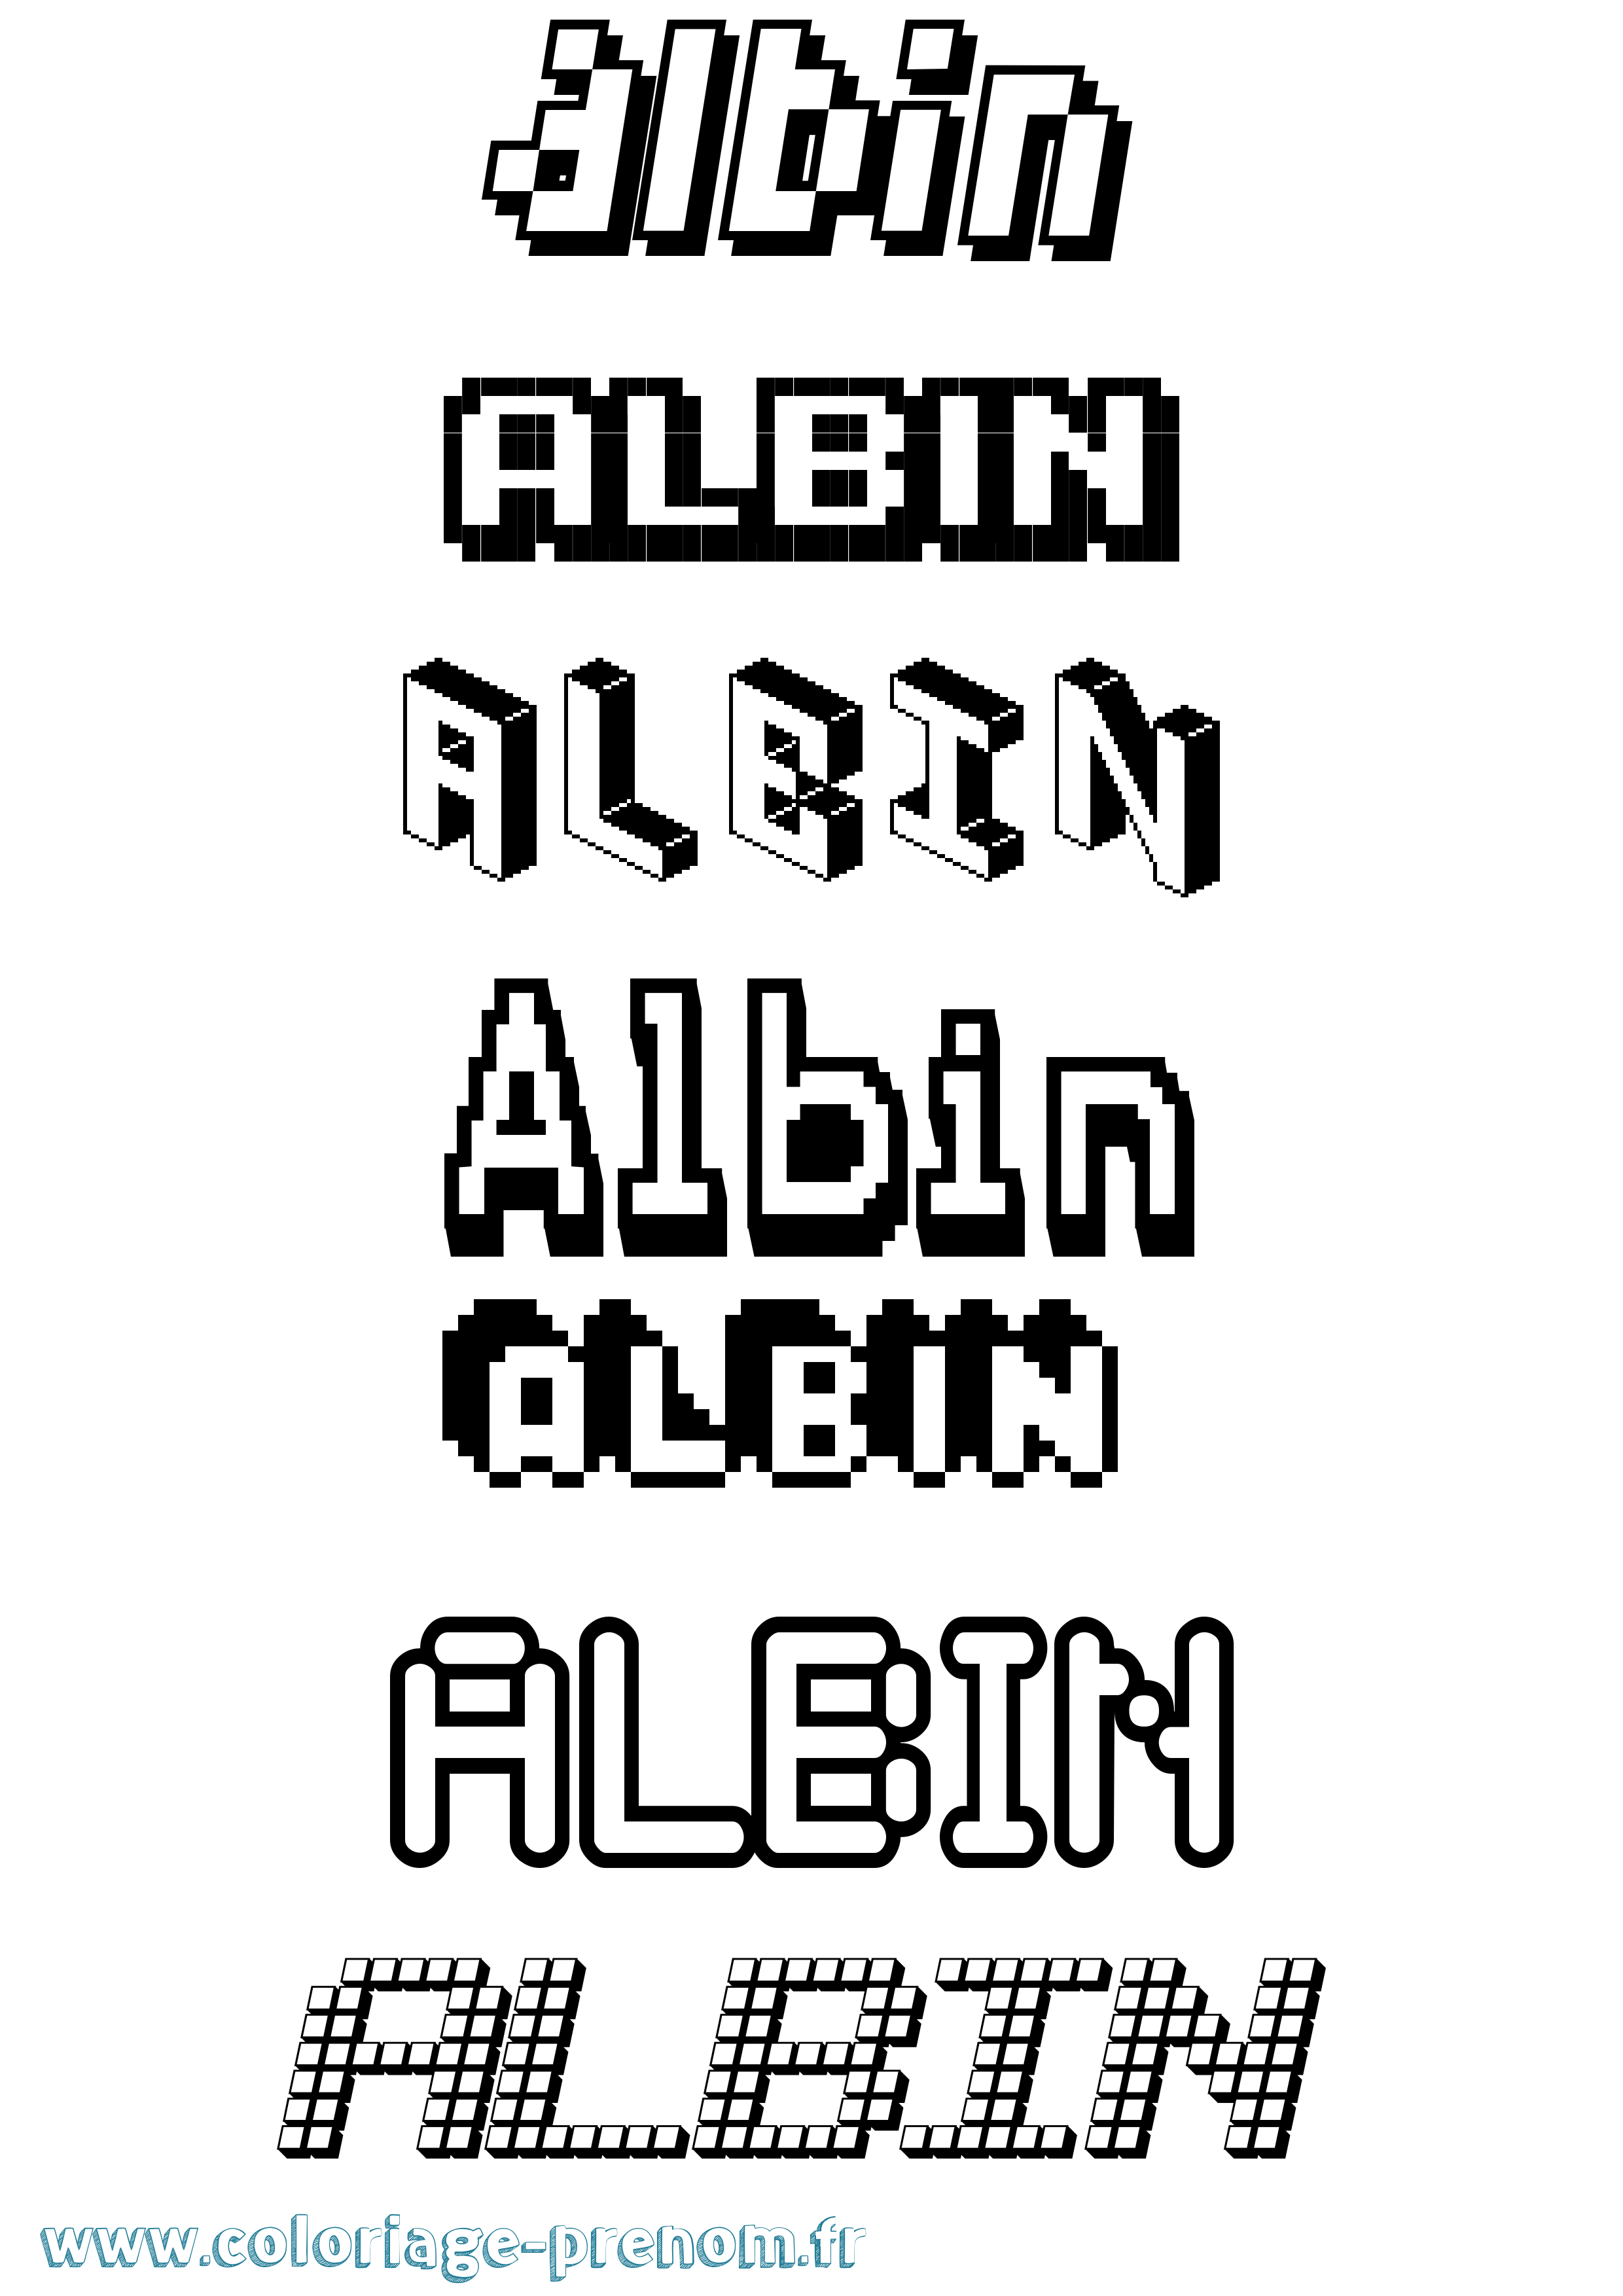 Coloriage prénom Albin Pixel